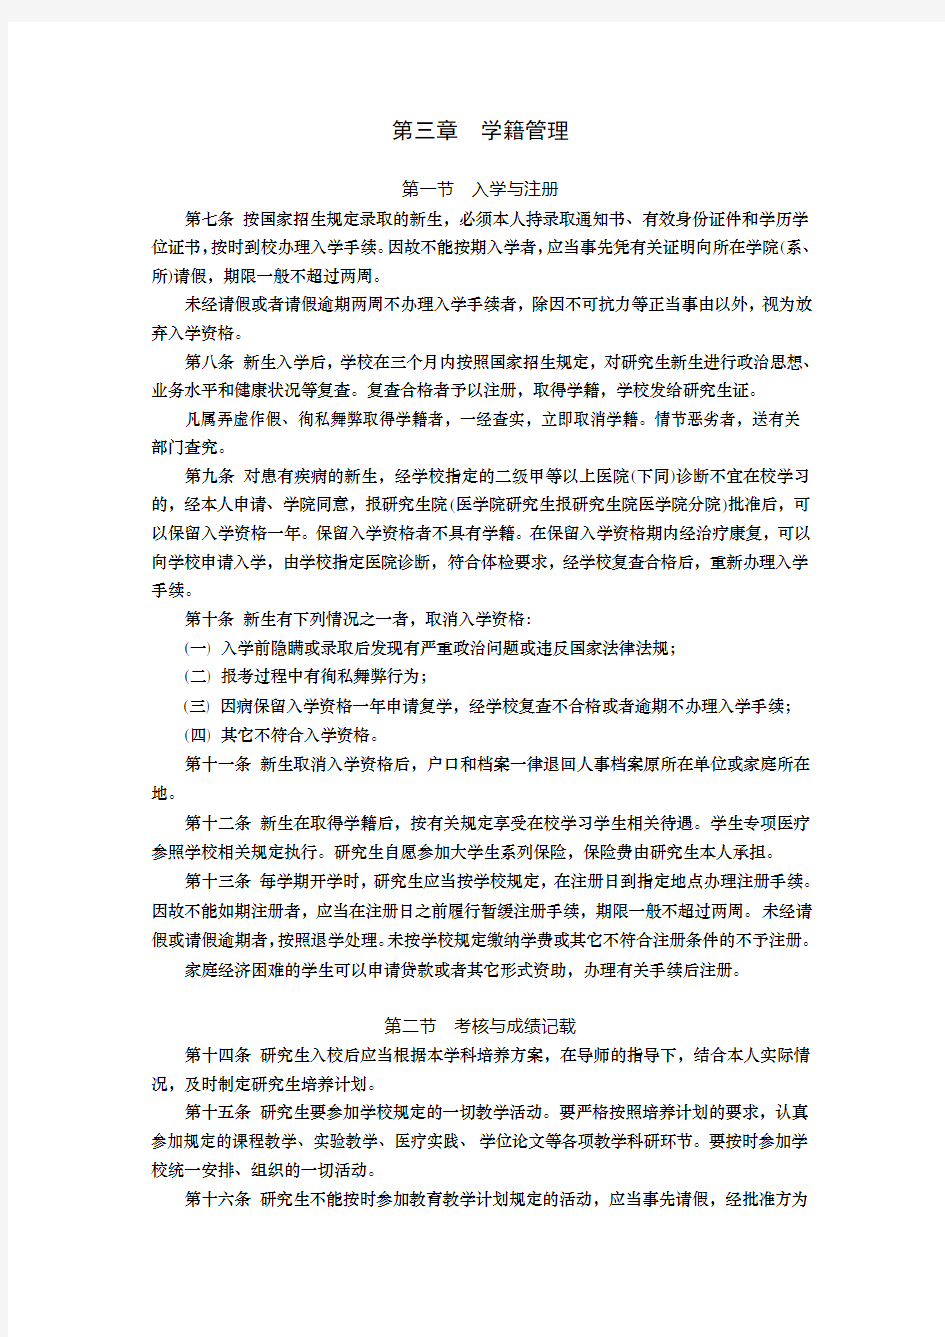 上海交通大学研究生管理实施细则